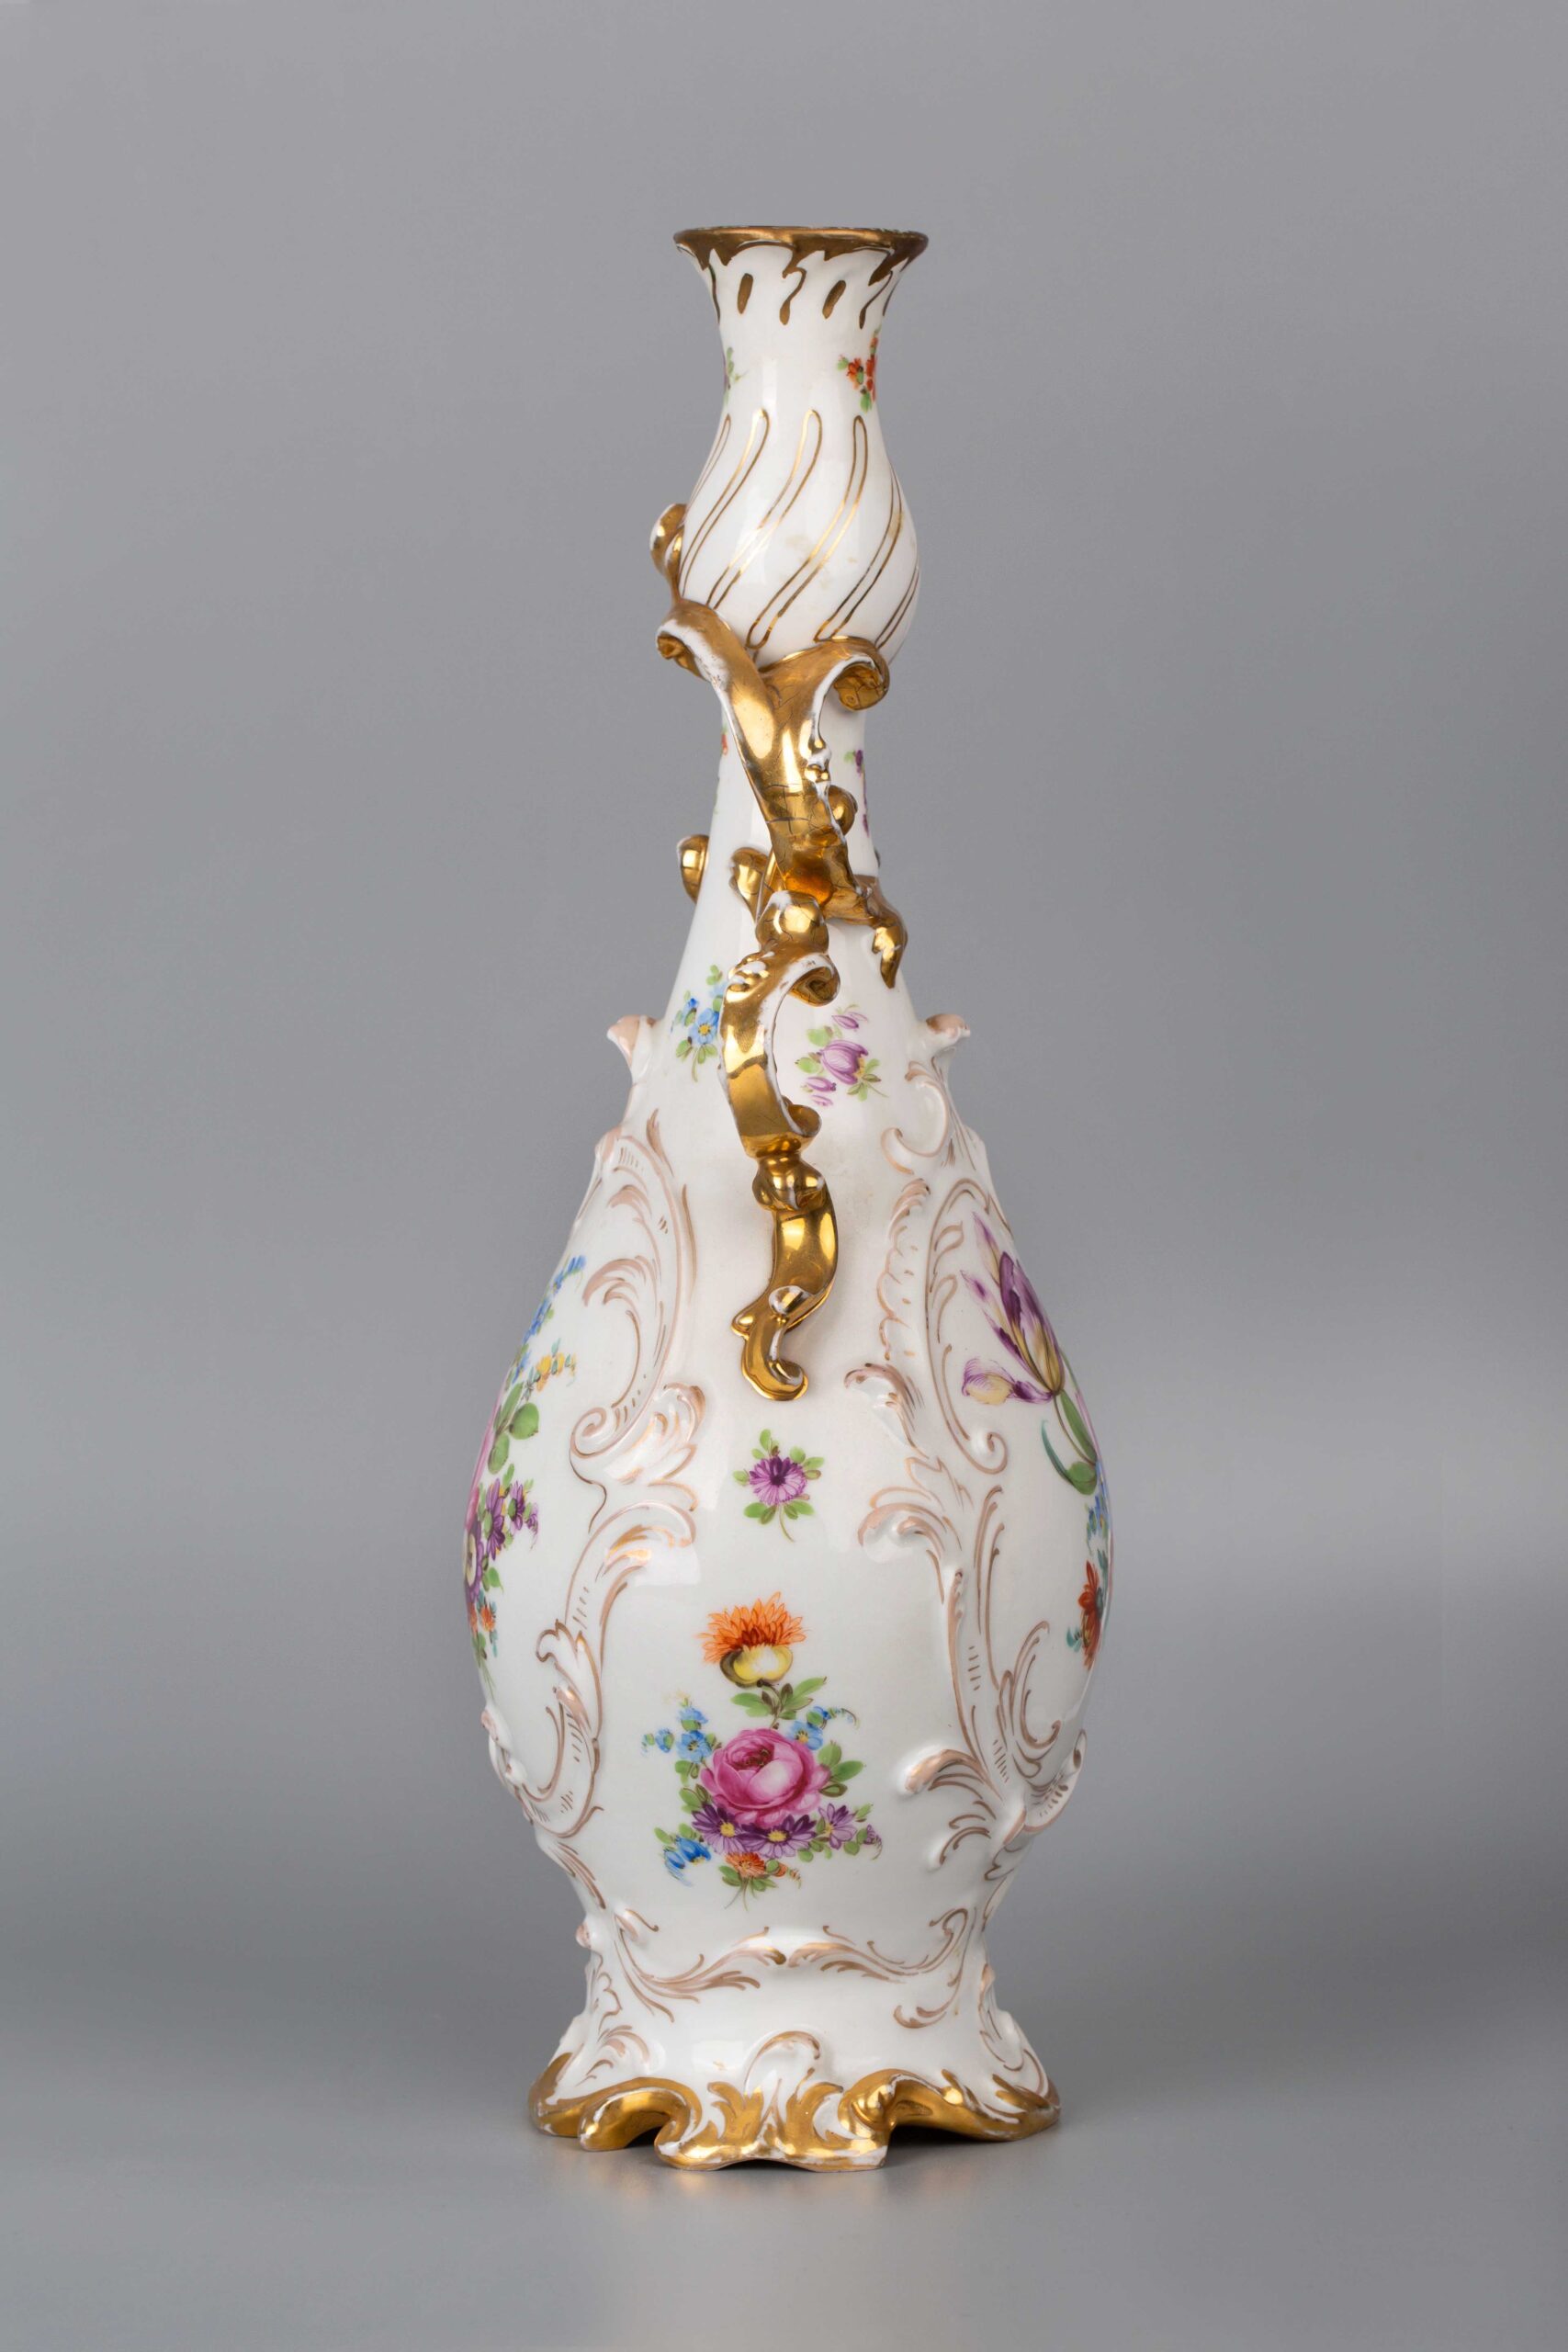 Meissen Porcelain Hand Painted Vase迈森瓷手绘花瓶– Time Art 